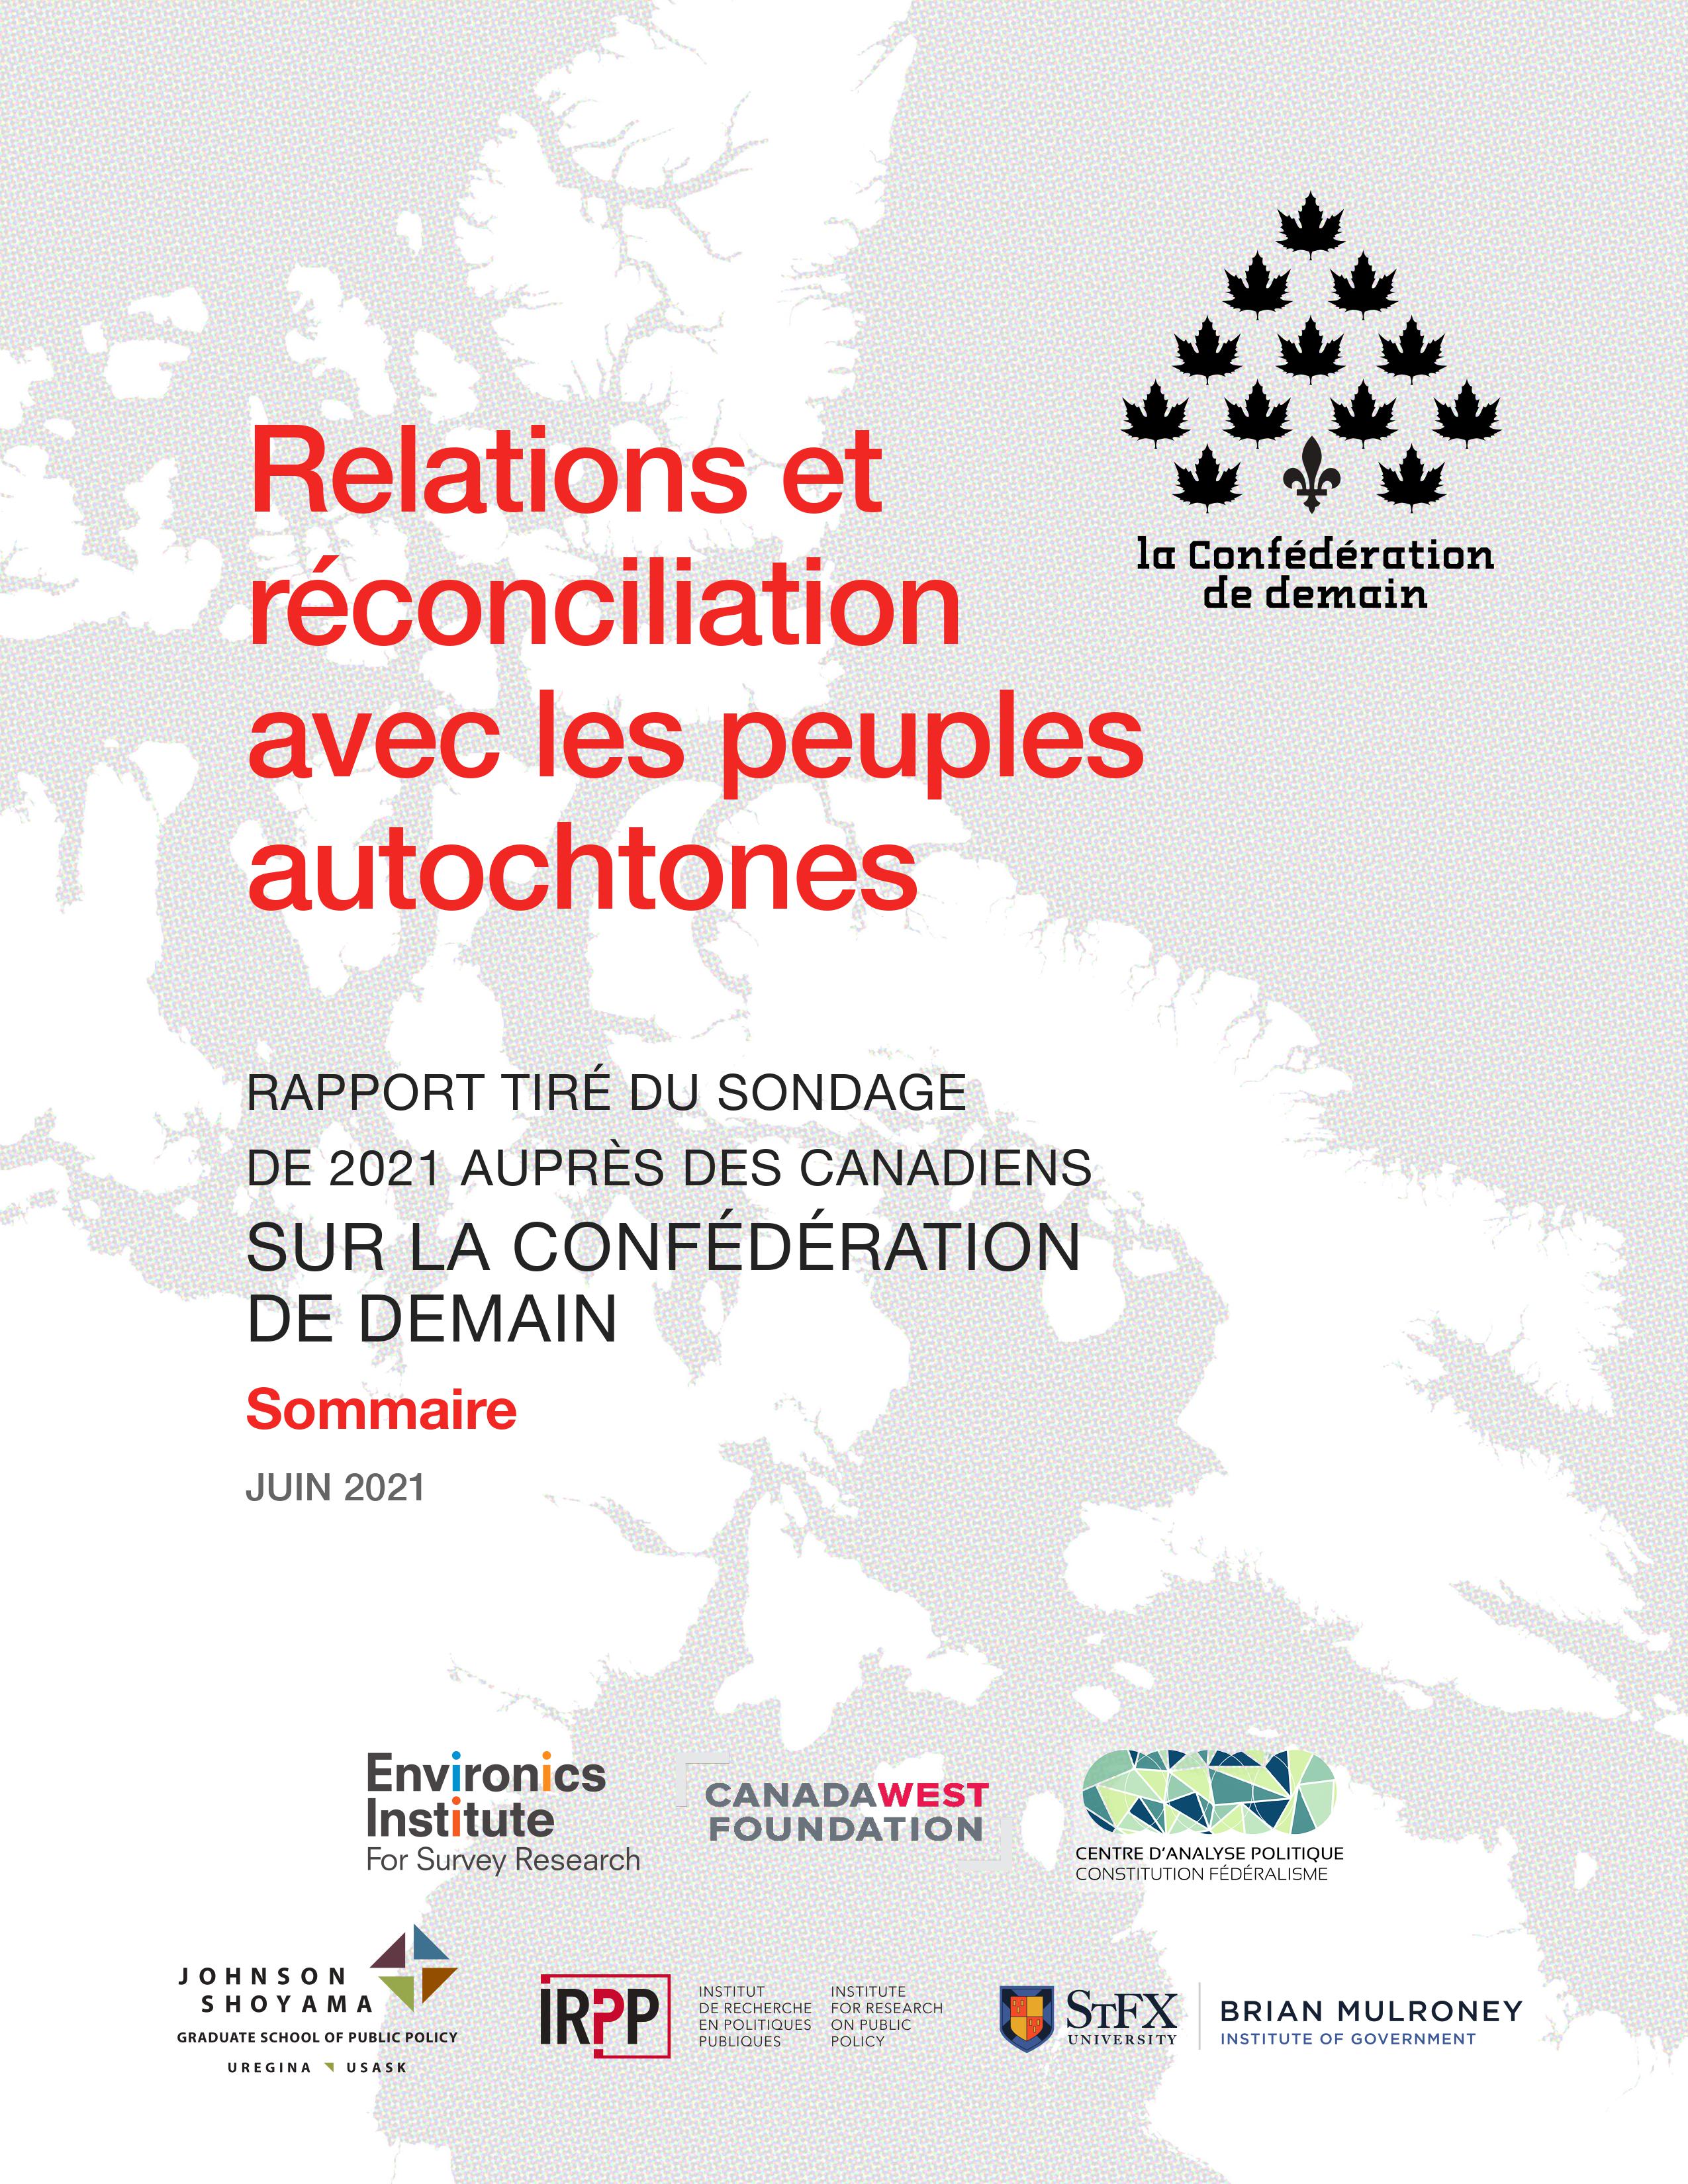 Relations et réconciliation avec les peuples autochtones